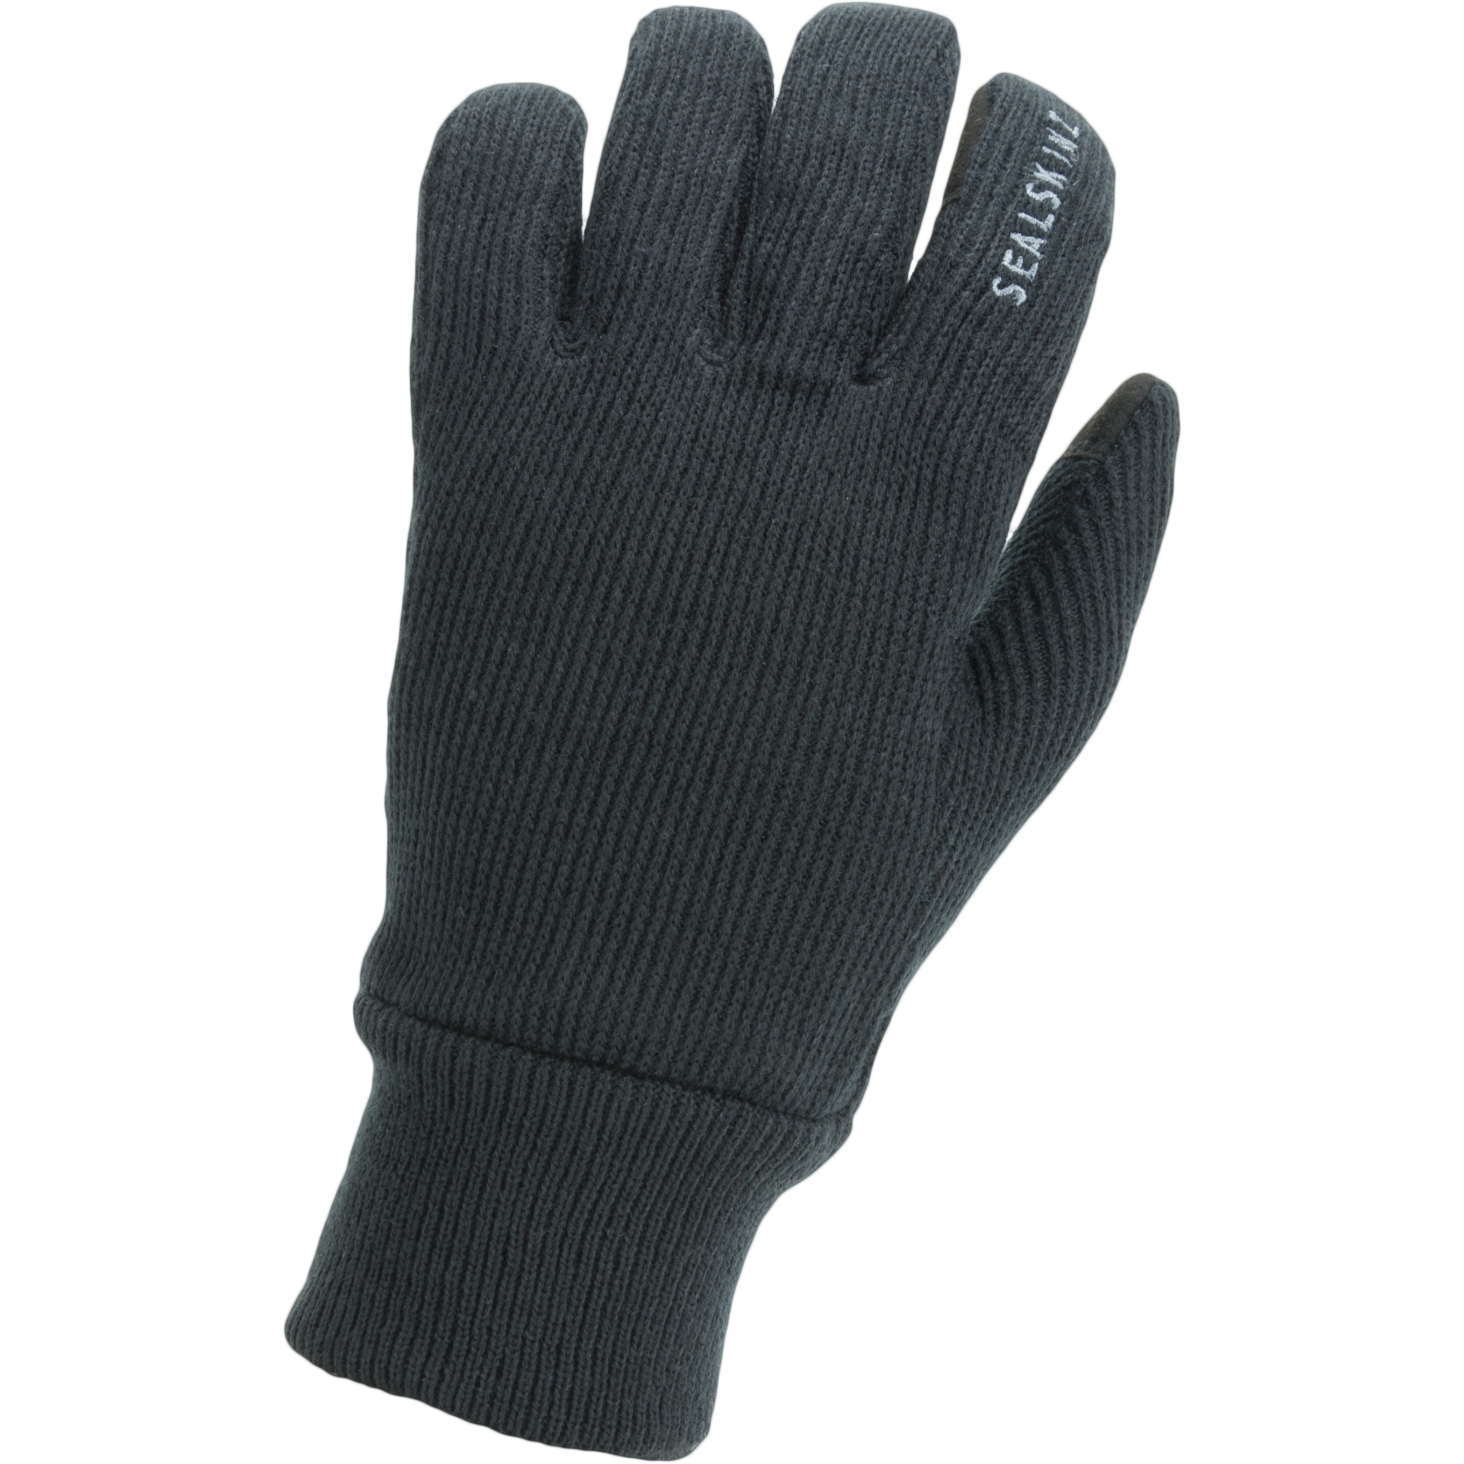 Productfoto van SealSkinz Winddichte Gebreide Handschoenen voor alle Weersomstandigheden - Zwart